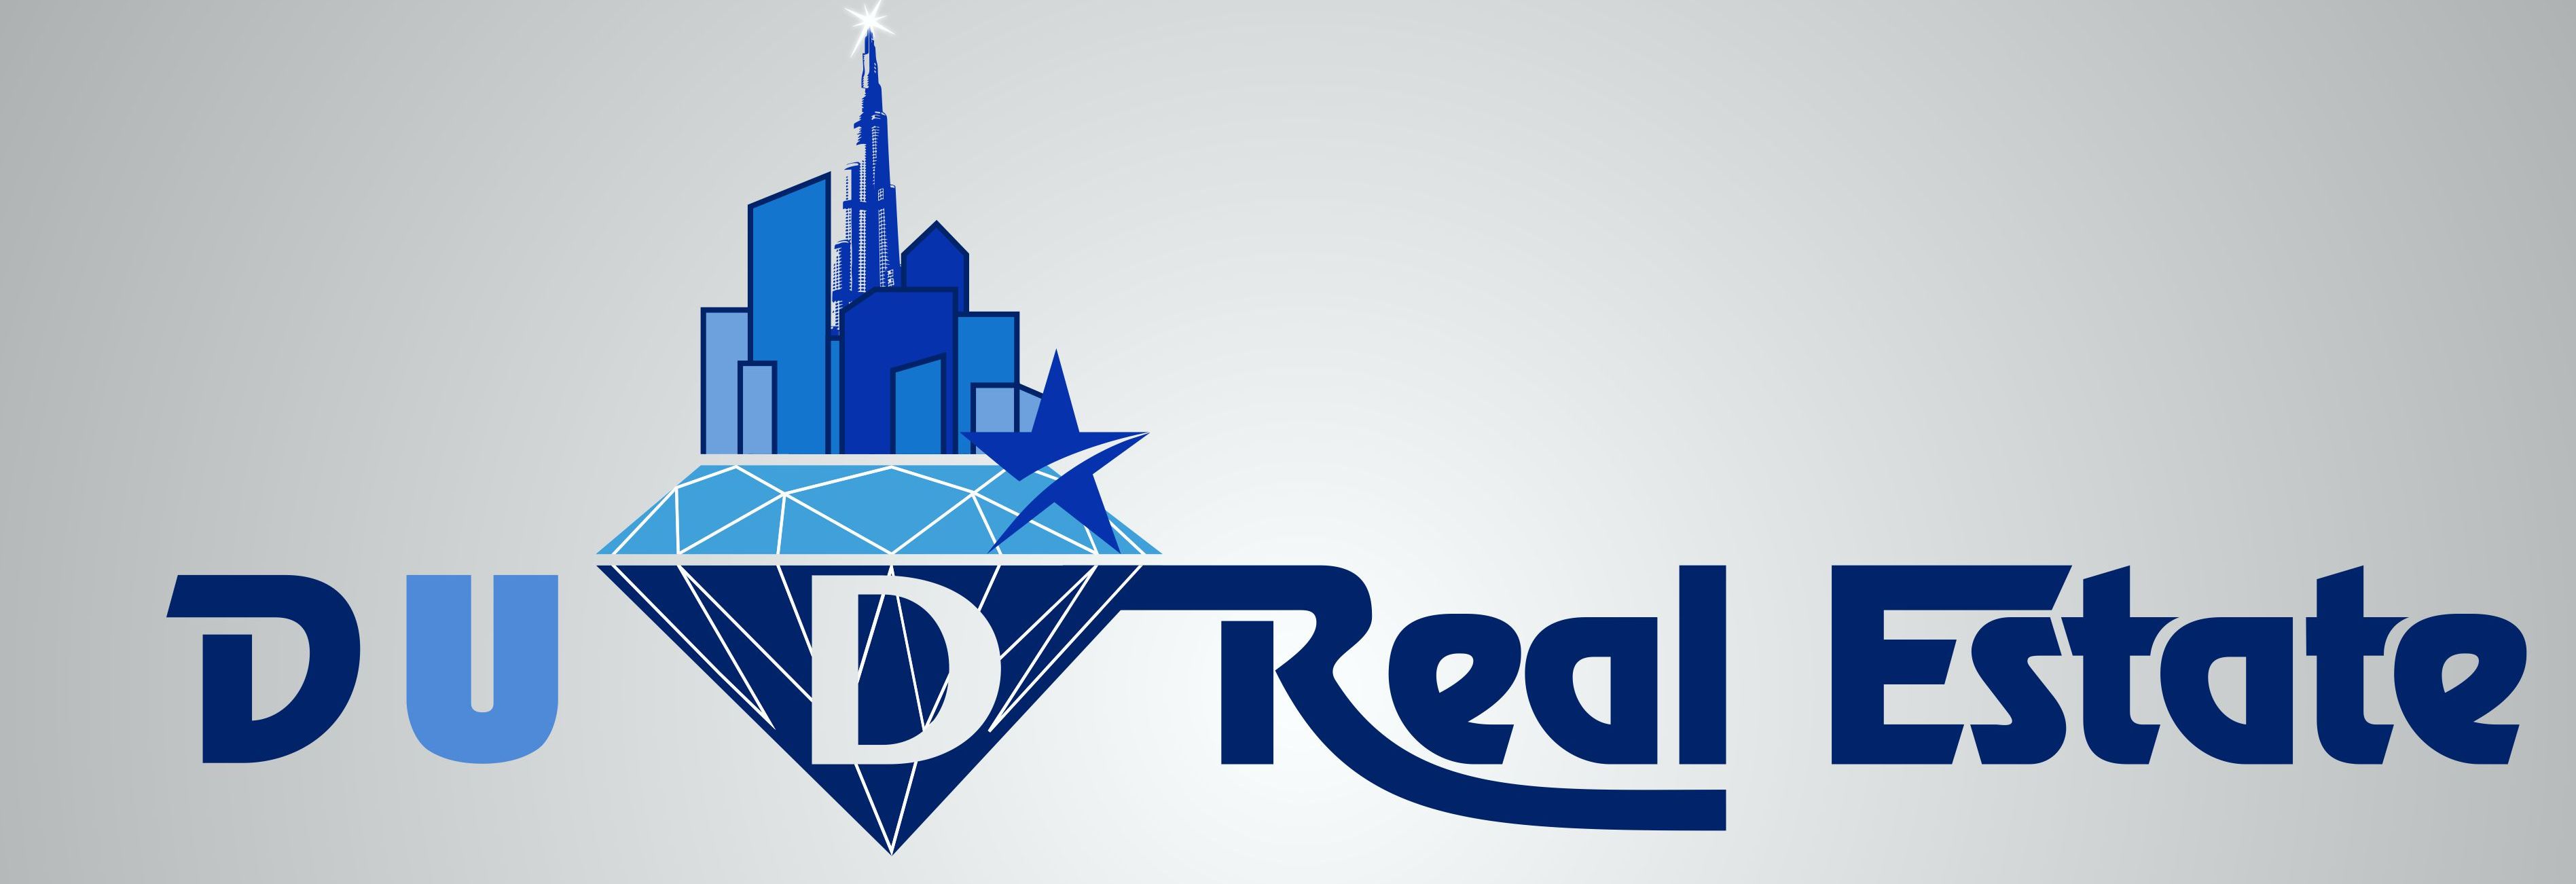 D U D Real Estate Broker LLC Logo